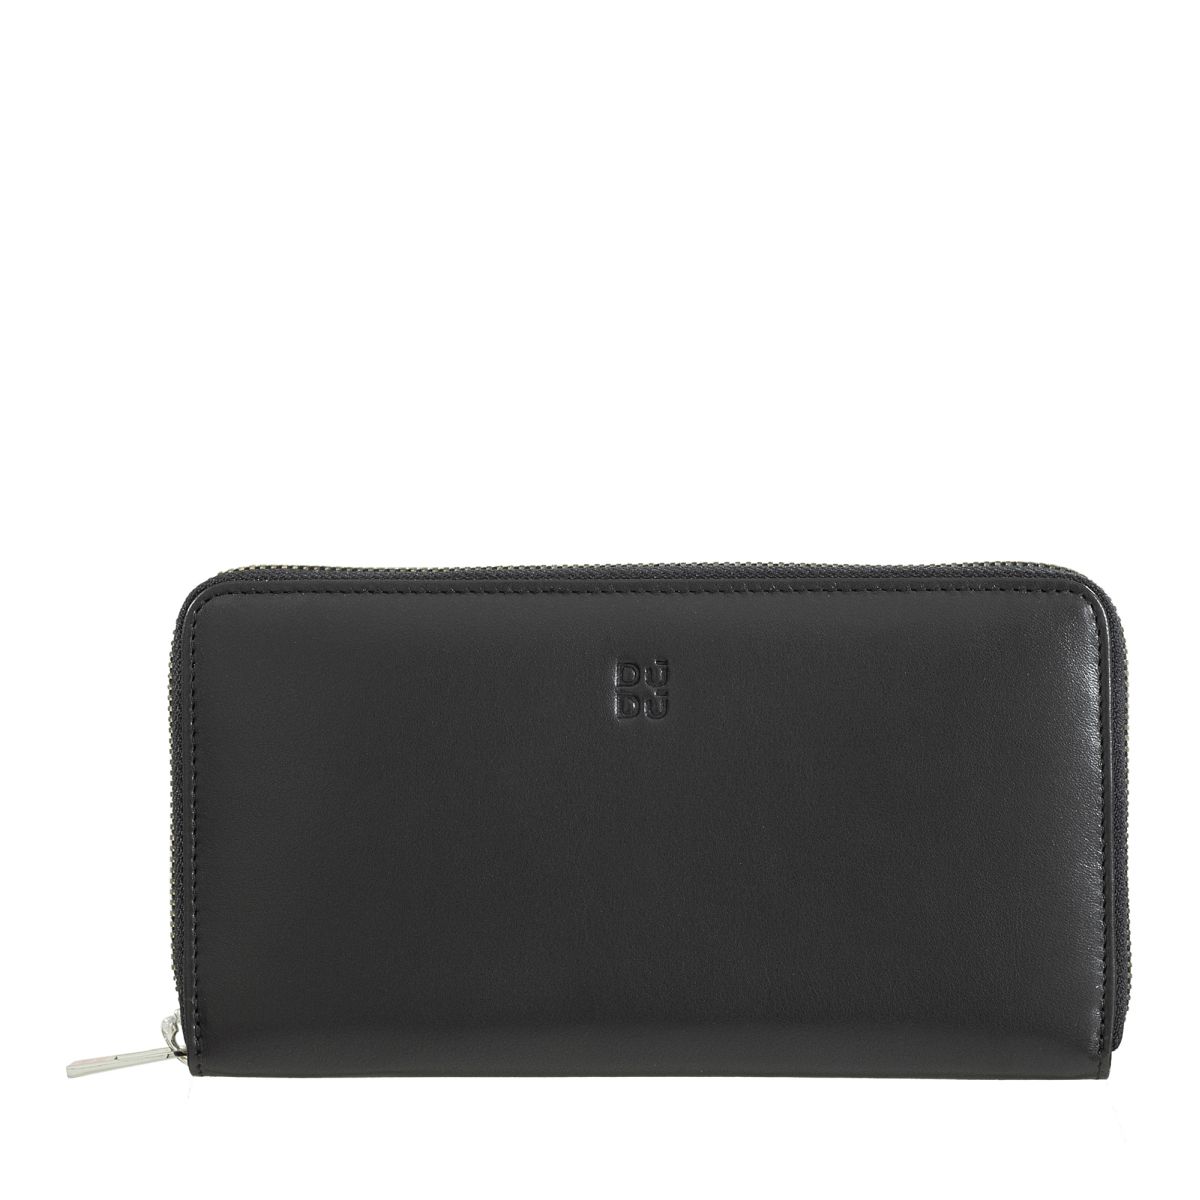 DuDu Zip around RFID wallet - Black